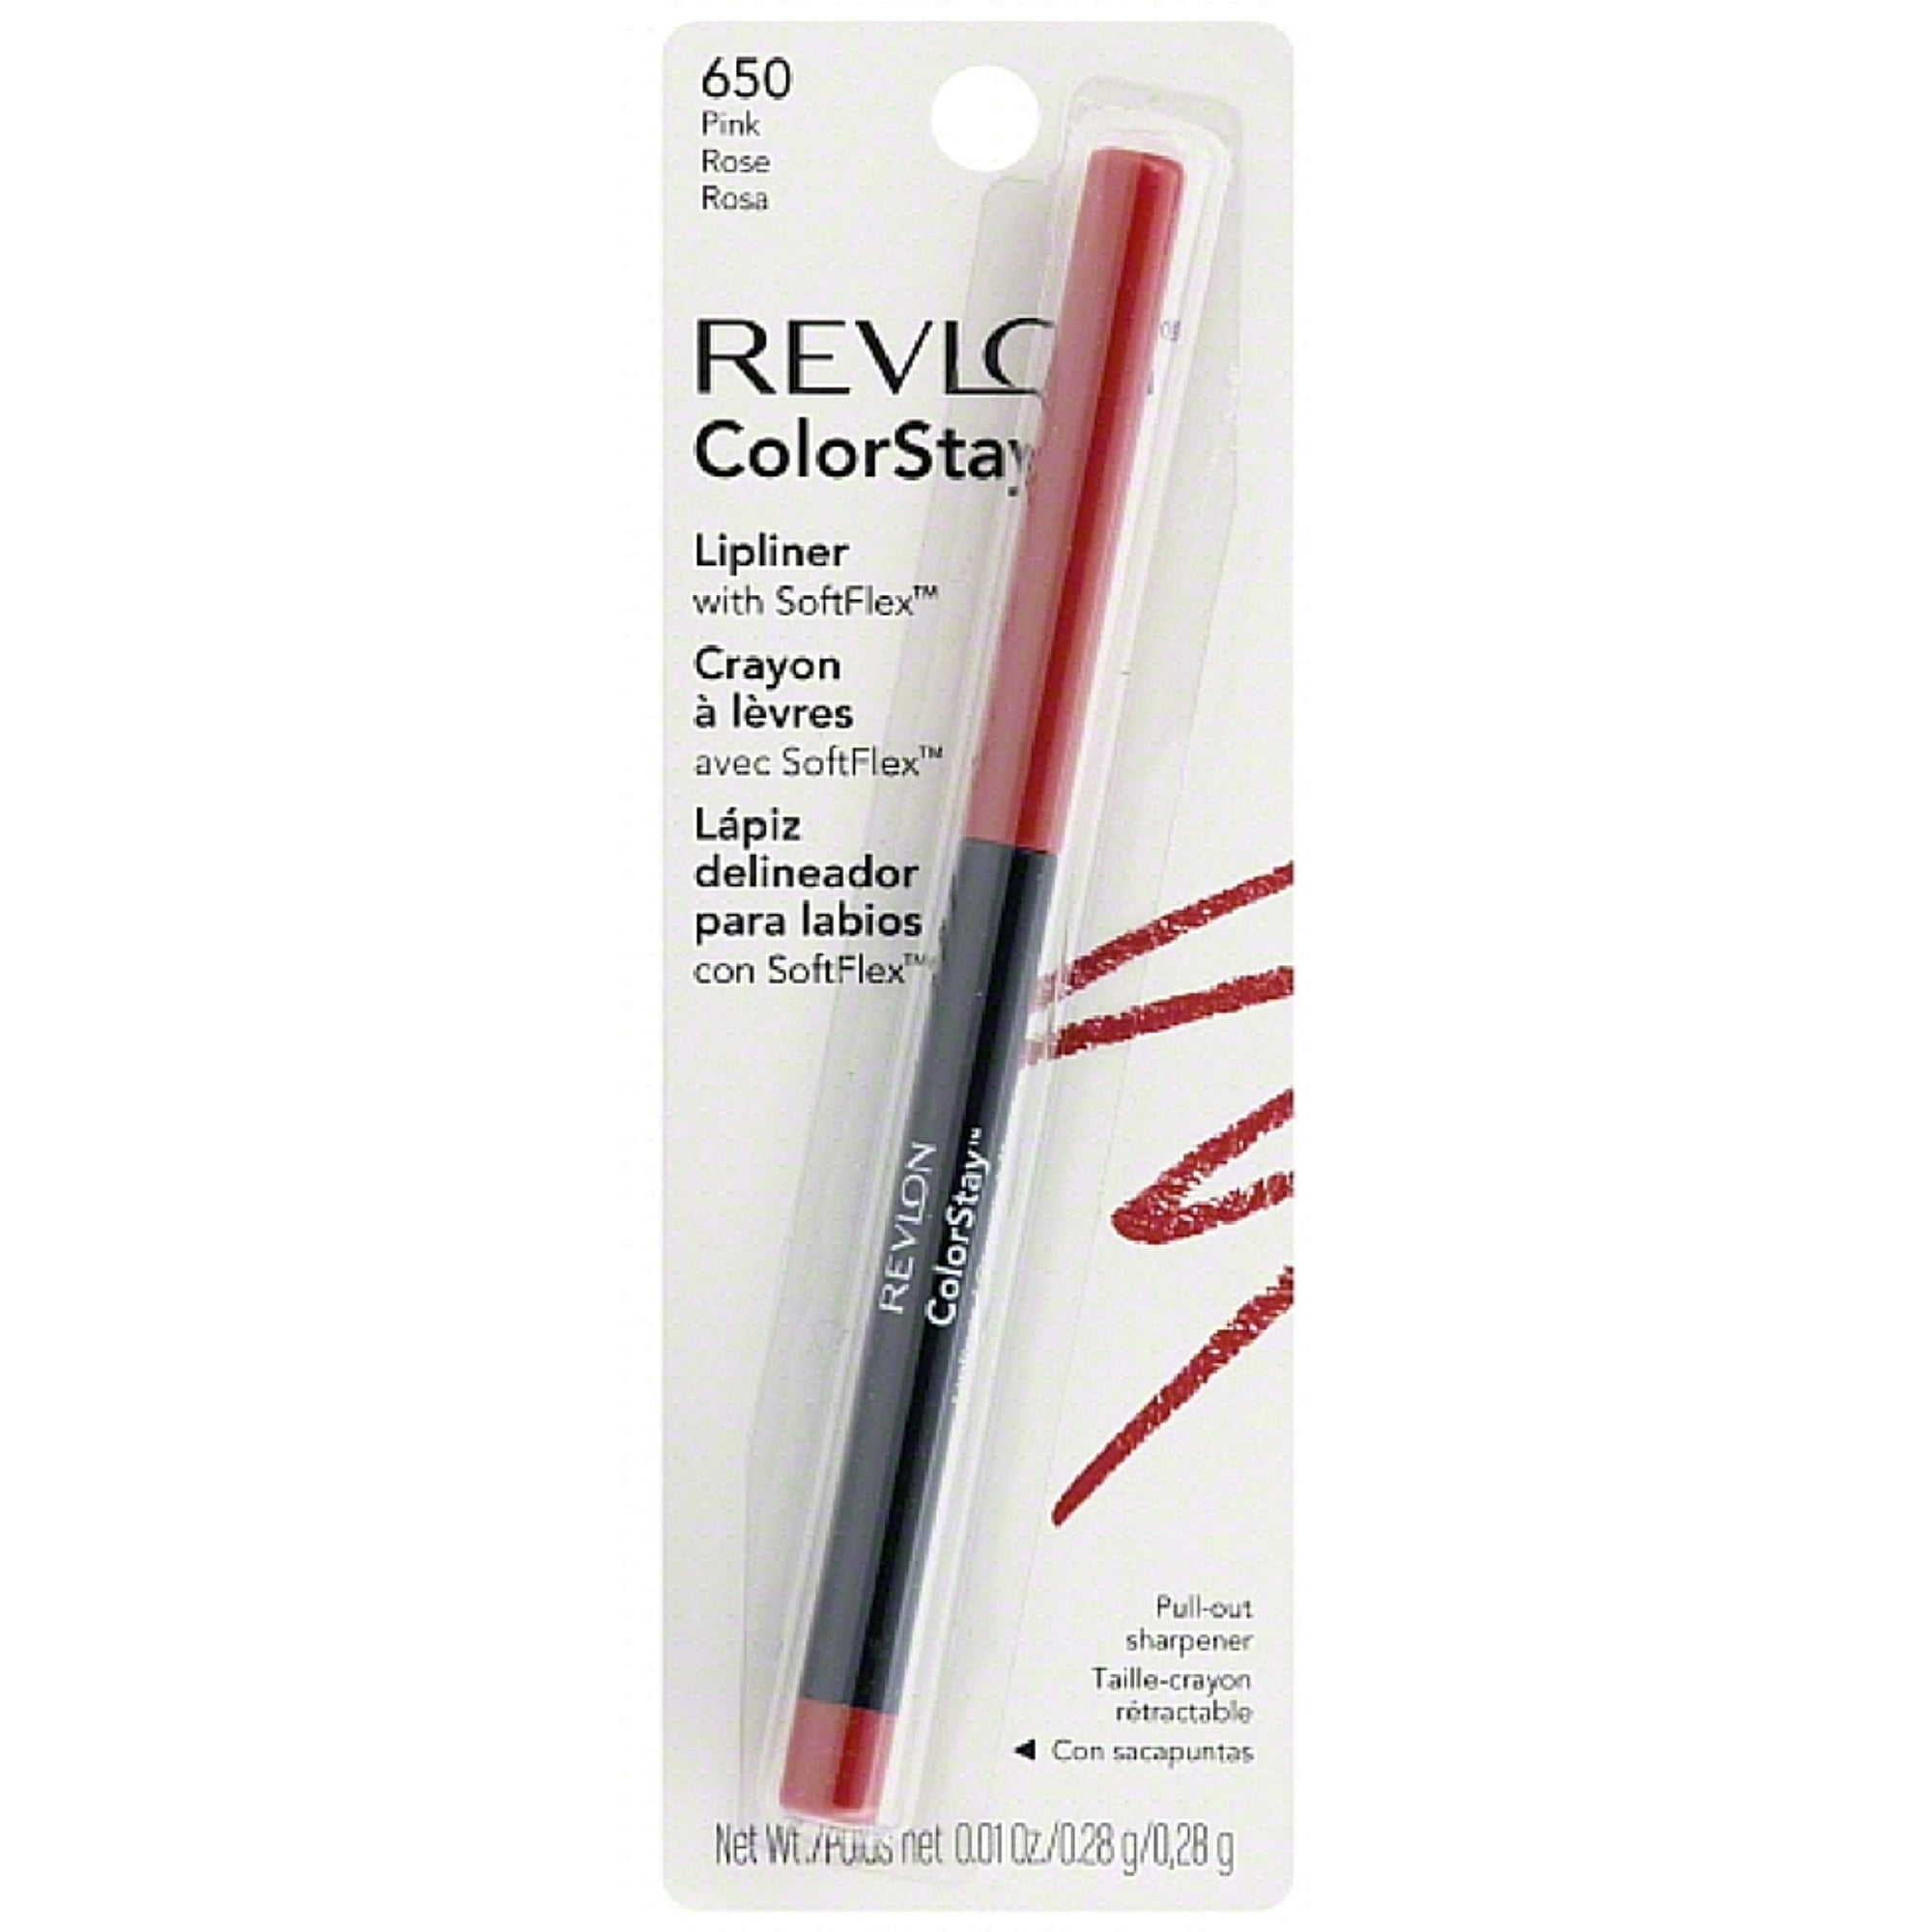 Revlon ColorStay Lip Liner with SoftFlex, Pink [650] 1 ea (Pack of 2) | Lipliner